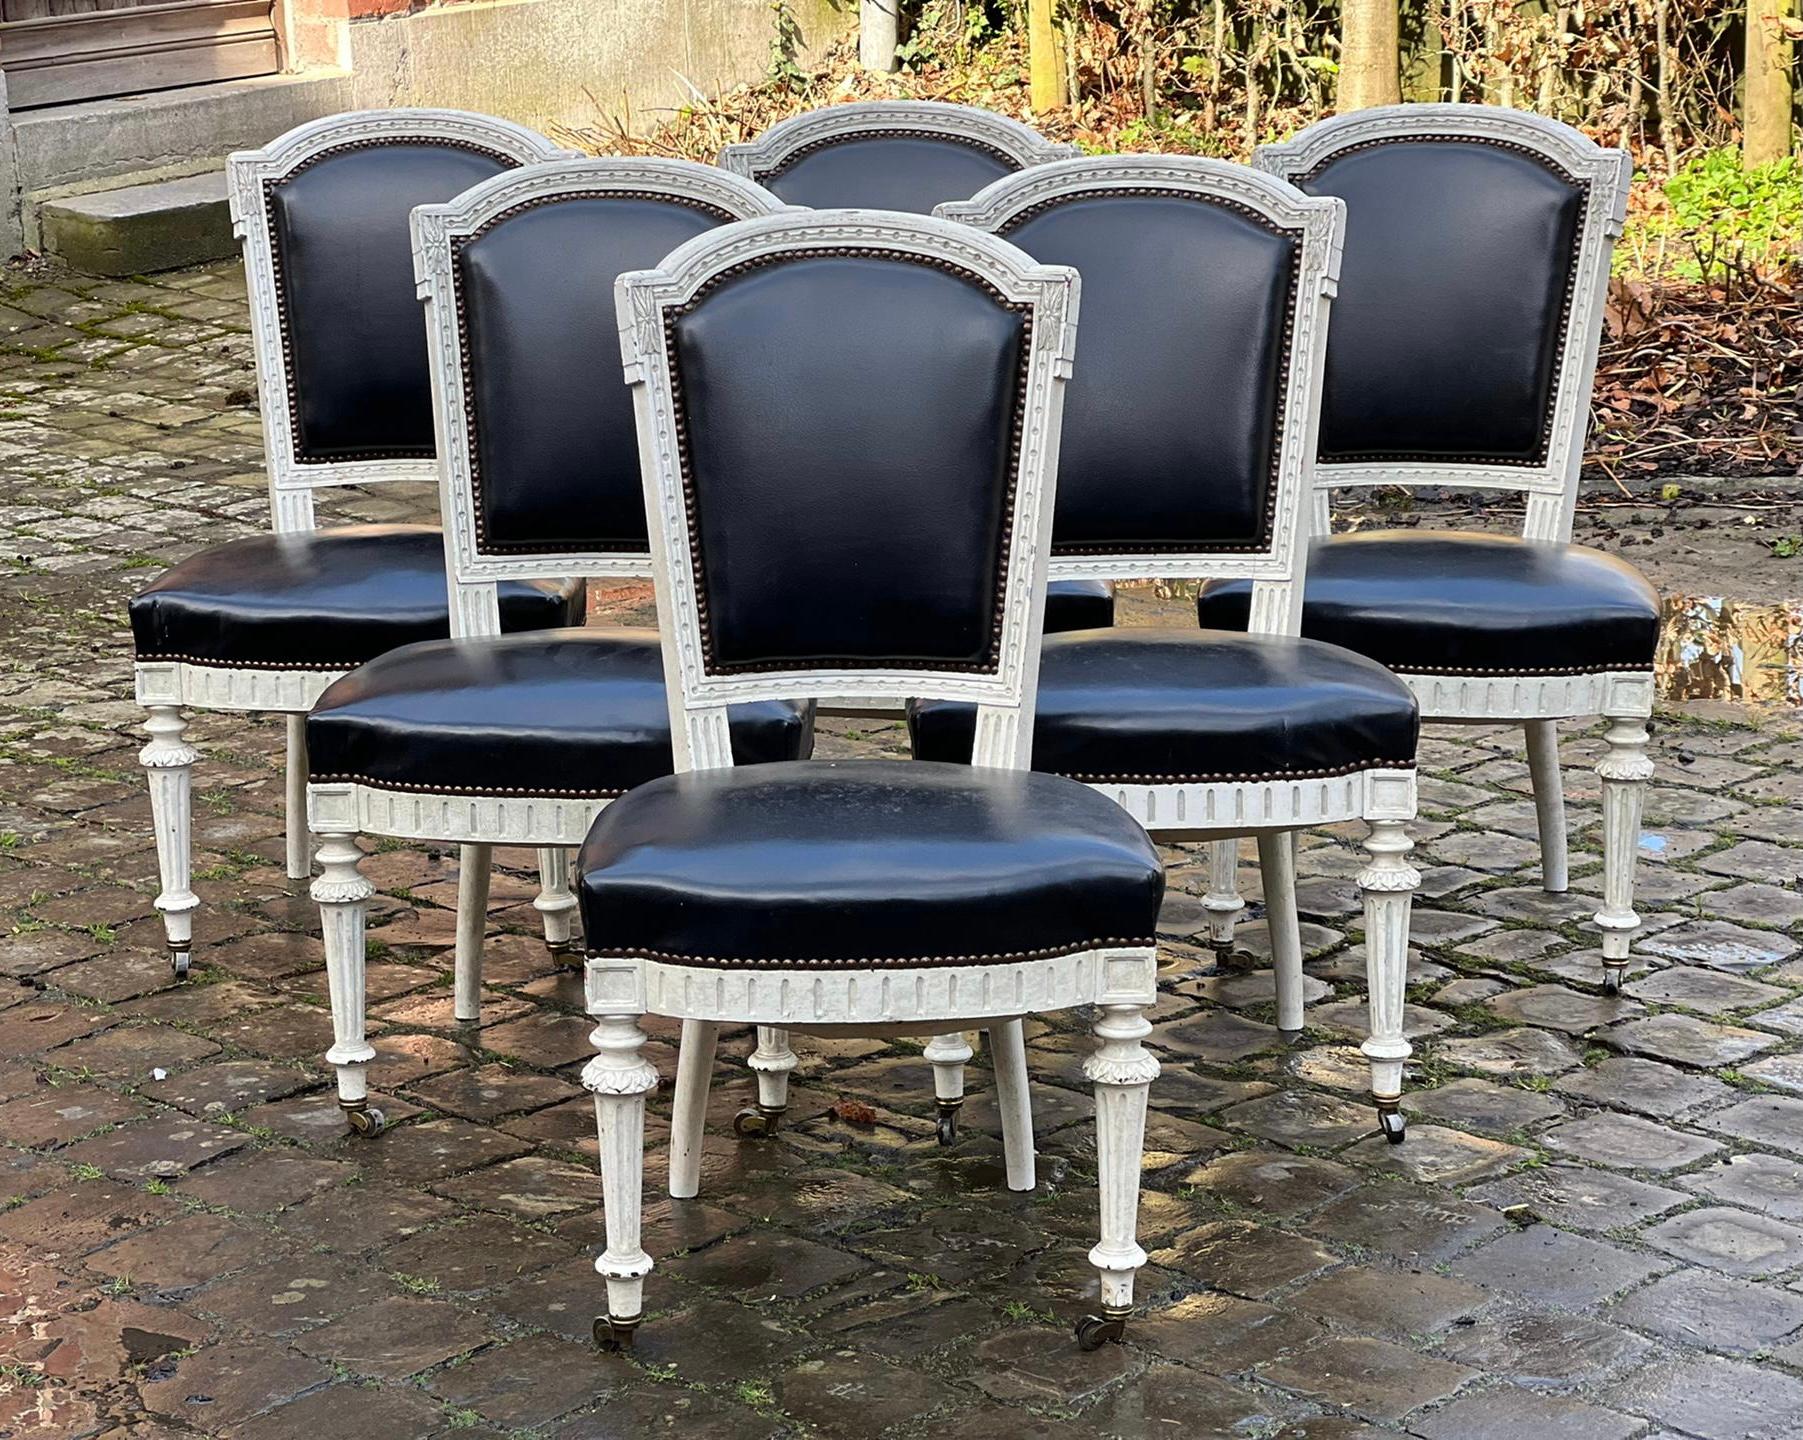 Ein hochwertiger Satz von 6 französischen Esszimmerstühlen, der aus einer Wohnung in Paris stammt. Mit der ursprünglichen Oberfläche und Patina, schönen Details und Rollen an den Vorderbeinen (immer ein Zeichen von Qualität). Die Polsterung ist in